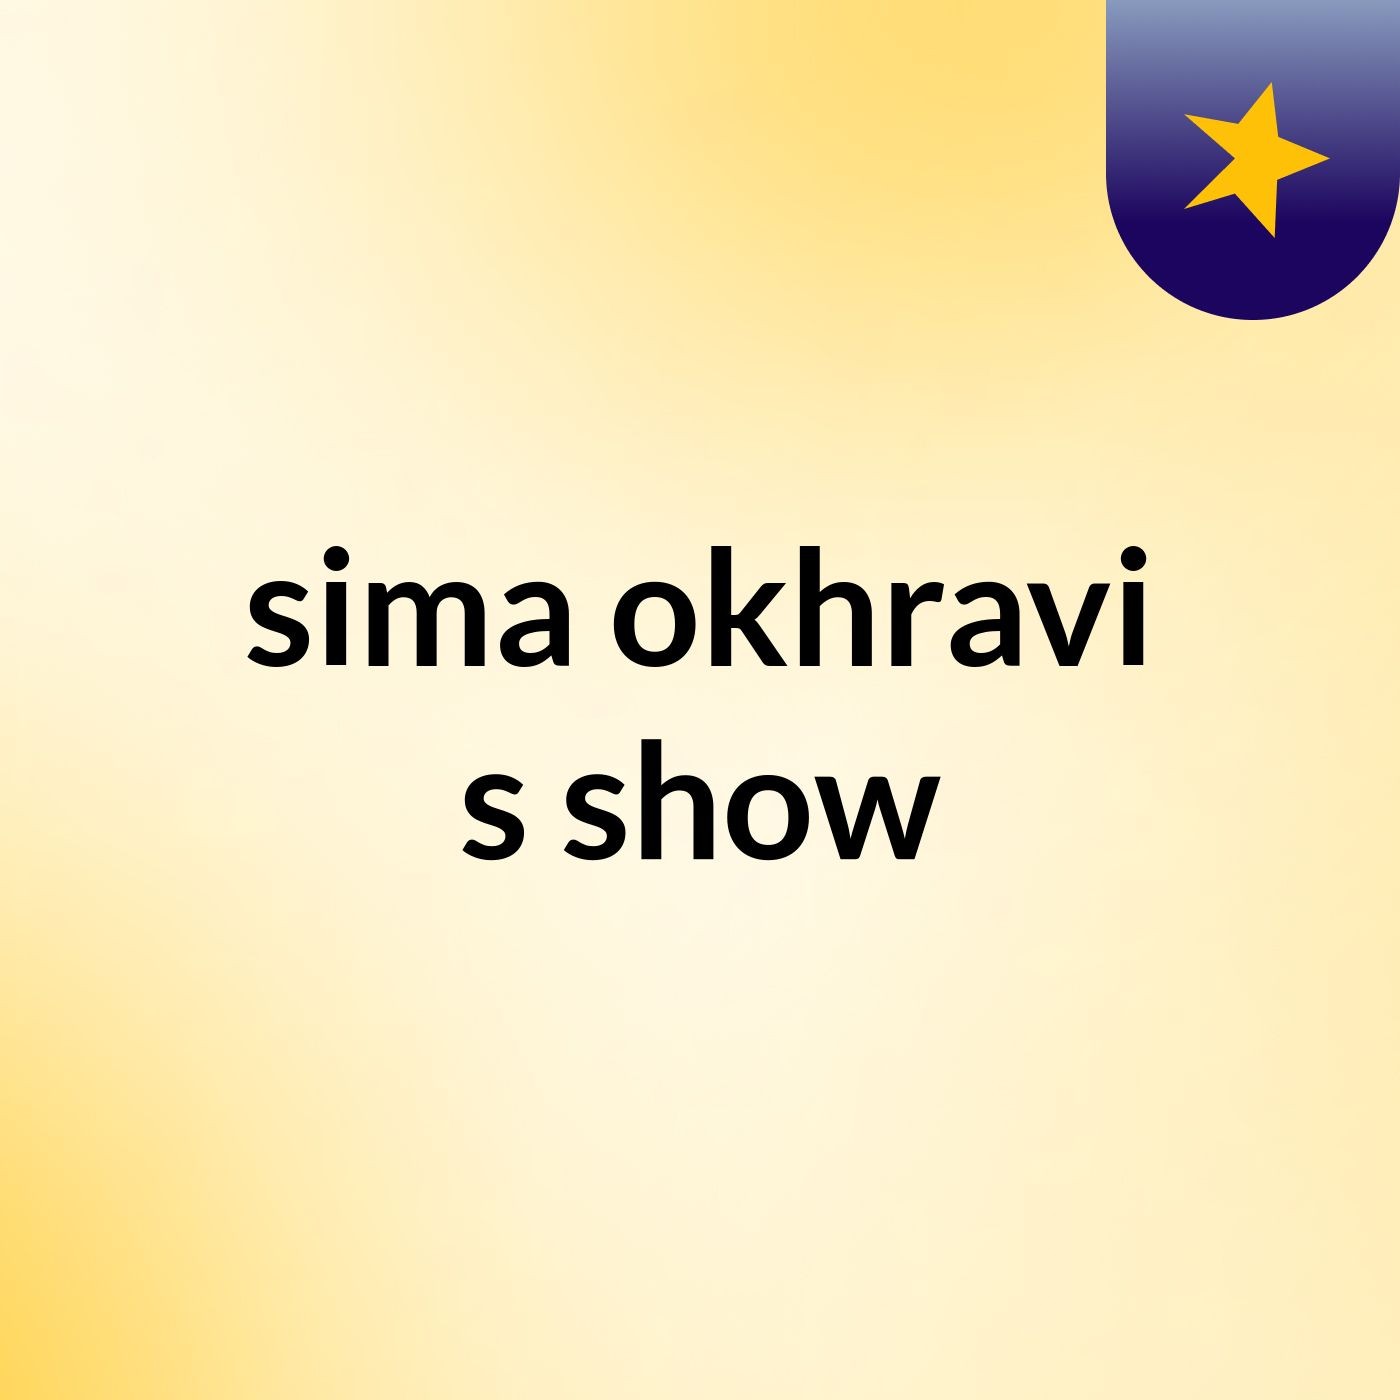 sima okhravi's show